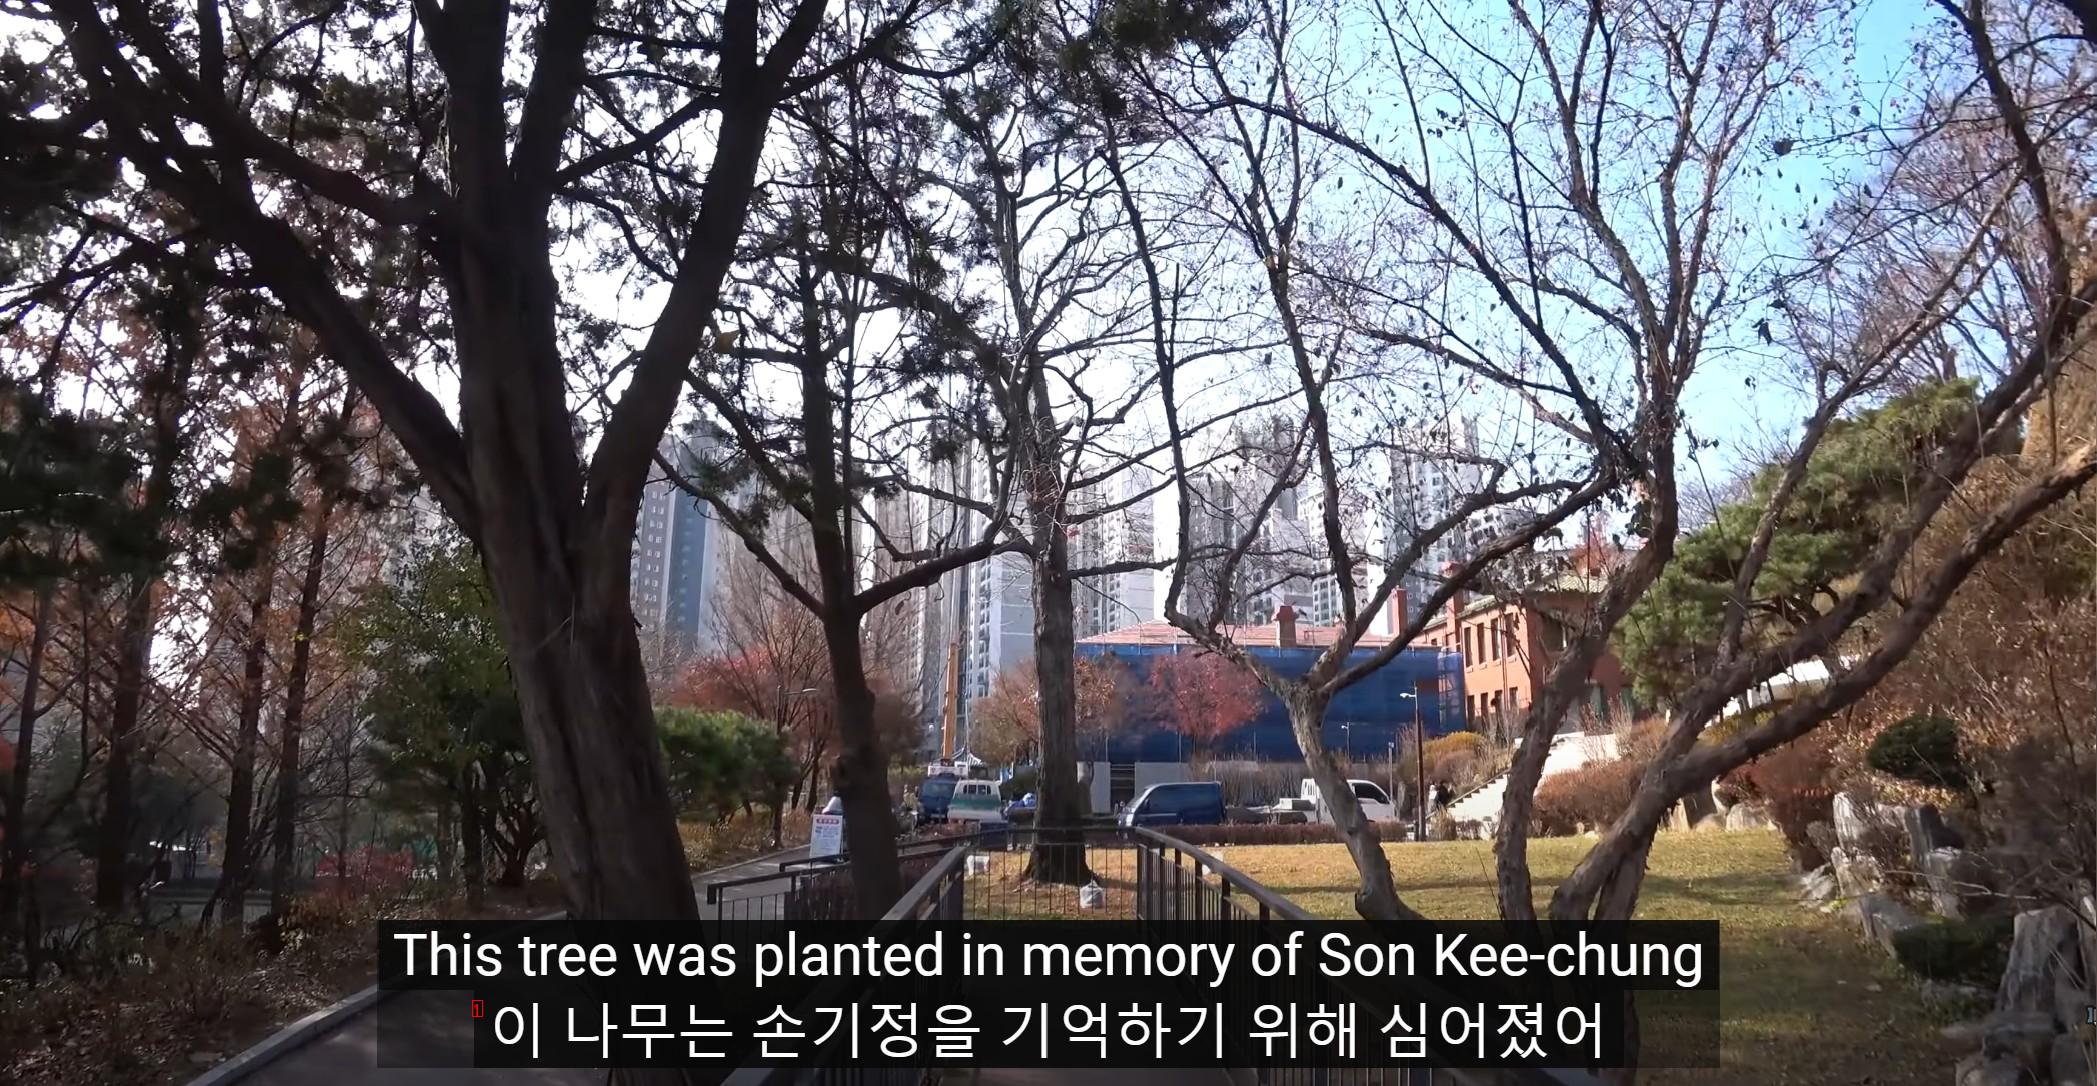 의외로 한국에 있는 히틀러가 준 나무